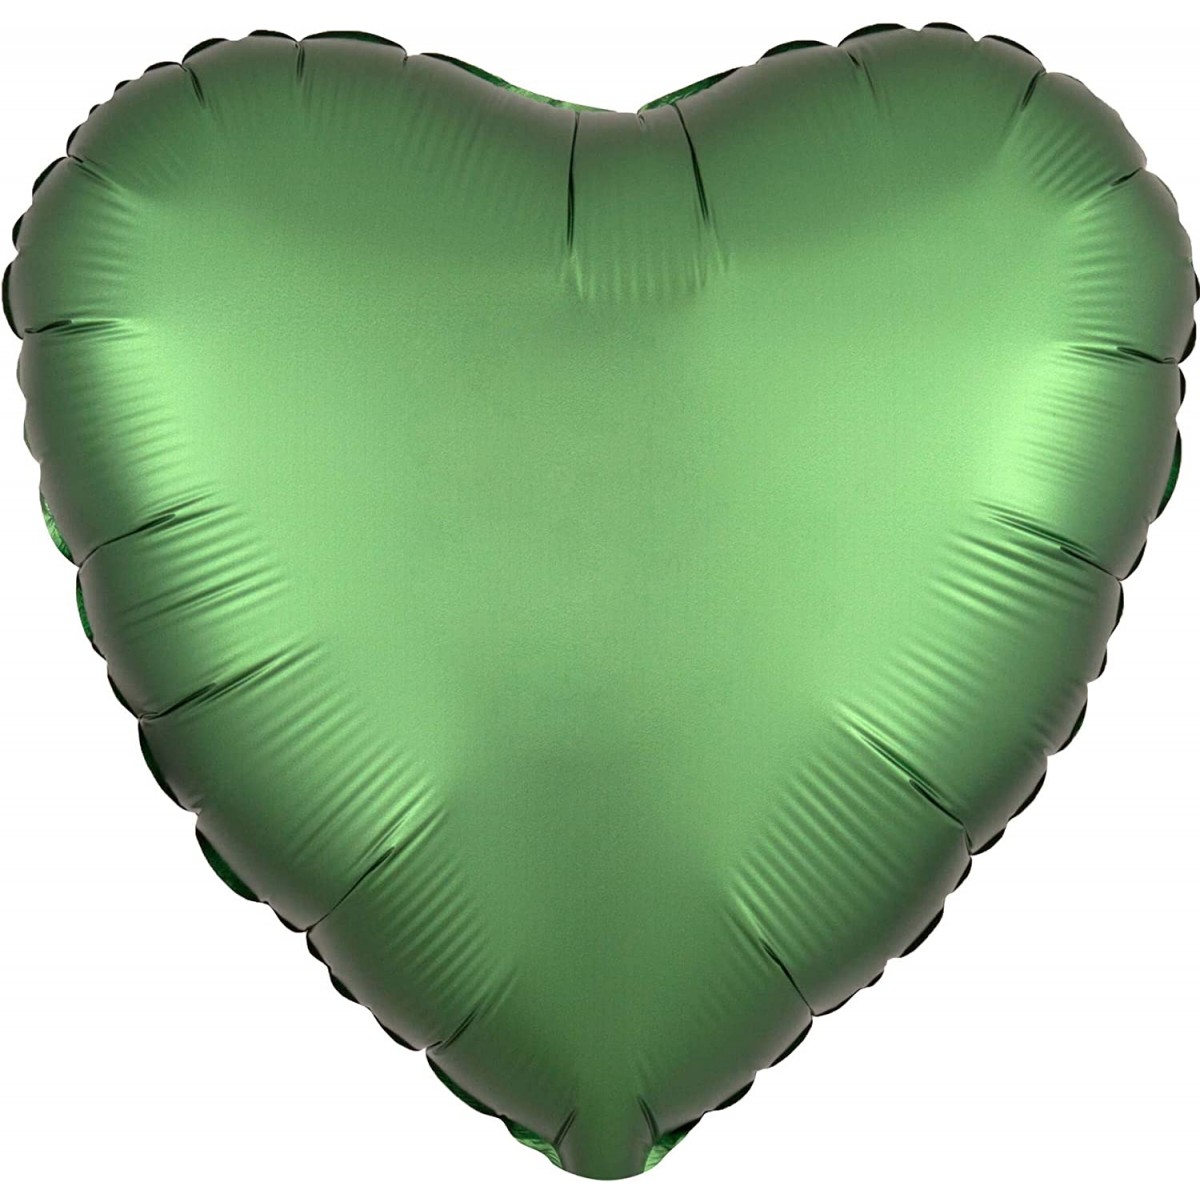 Palloncino Verde Smeraldo forma cuore, da 42 cm, per feste